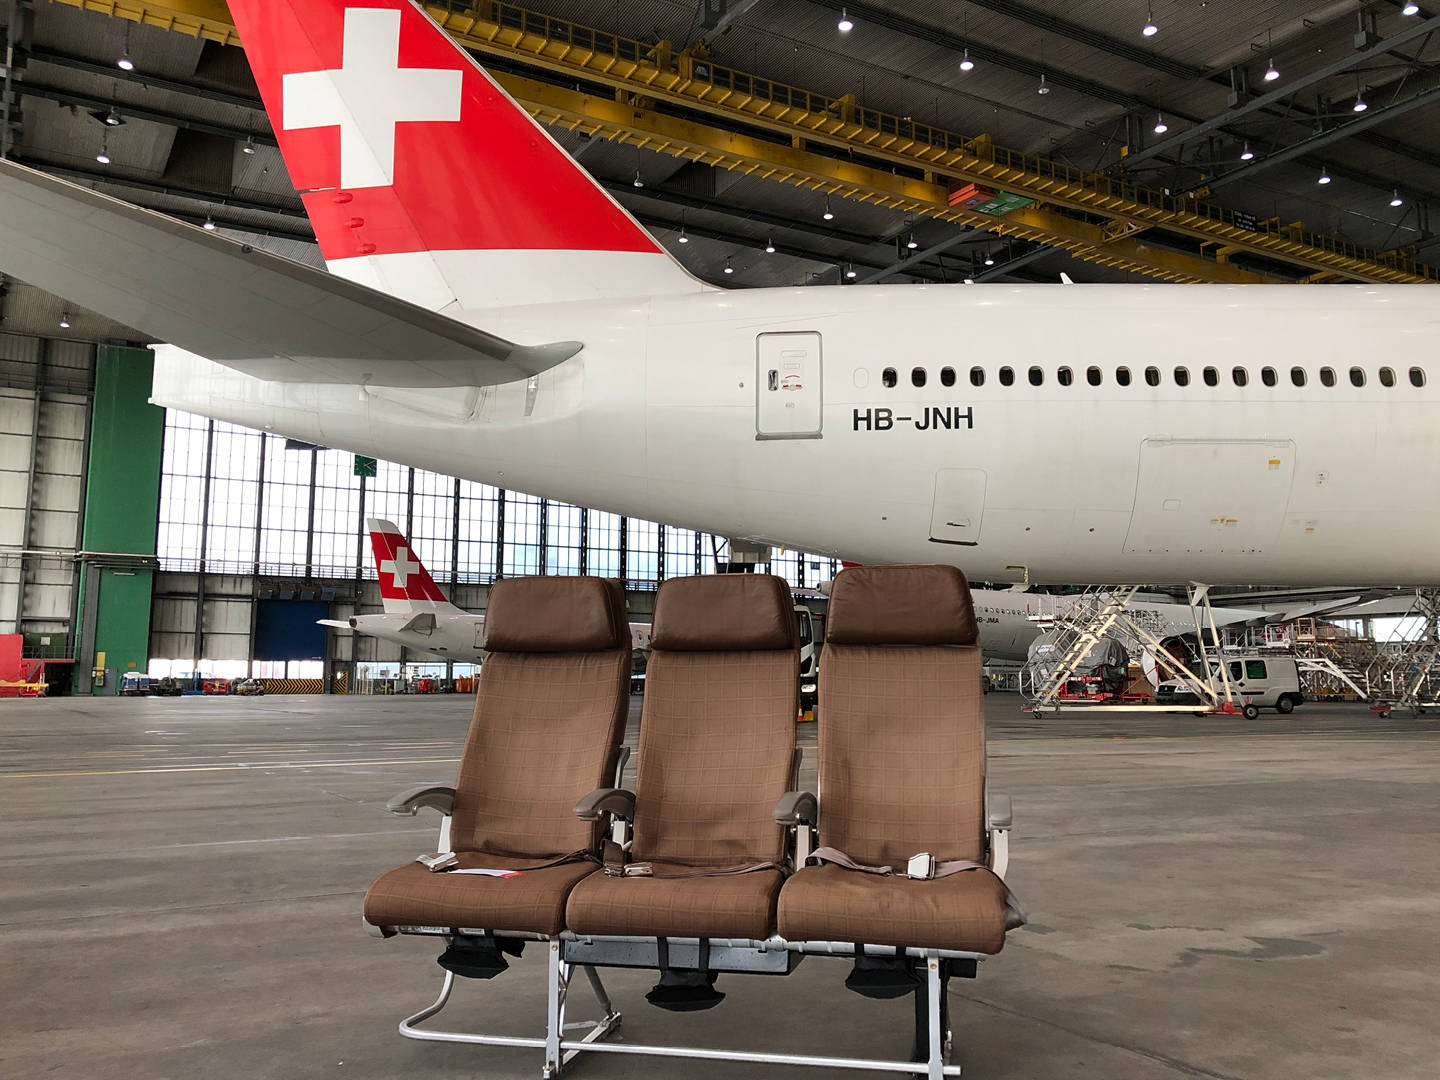 Schweiziske flyselskabers fly med stole forberedt til flyvning Wallpaper